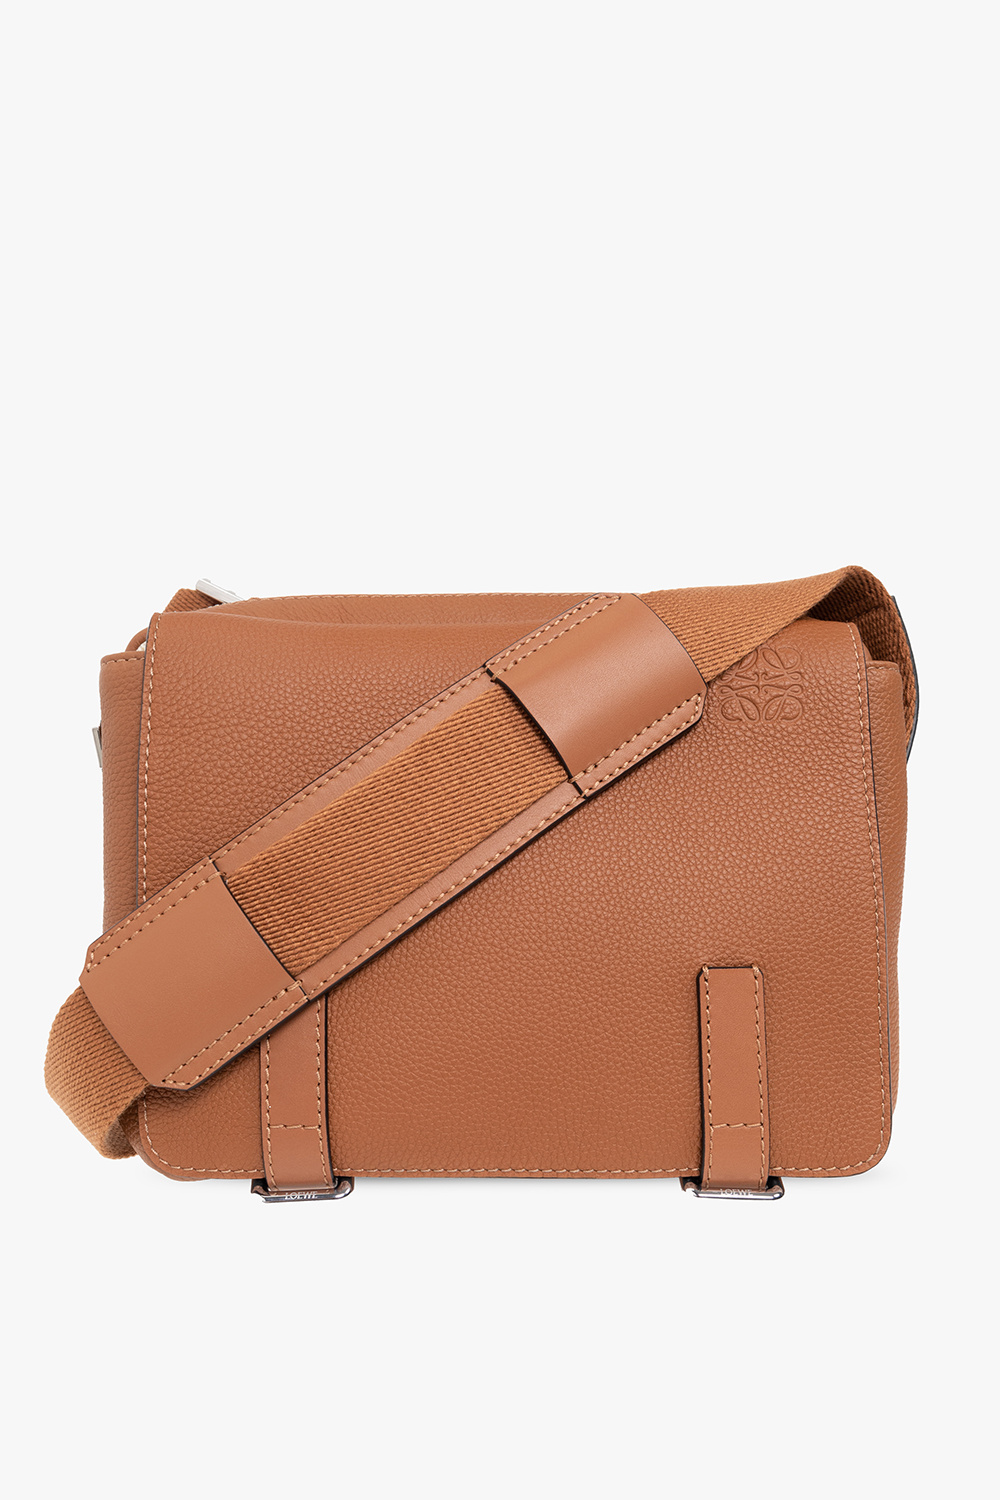 Loewe 'Messenger XS' shoulder bag | Men's Bags | Loewe x On 